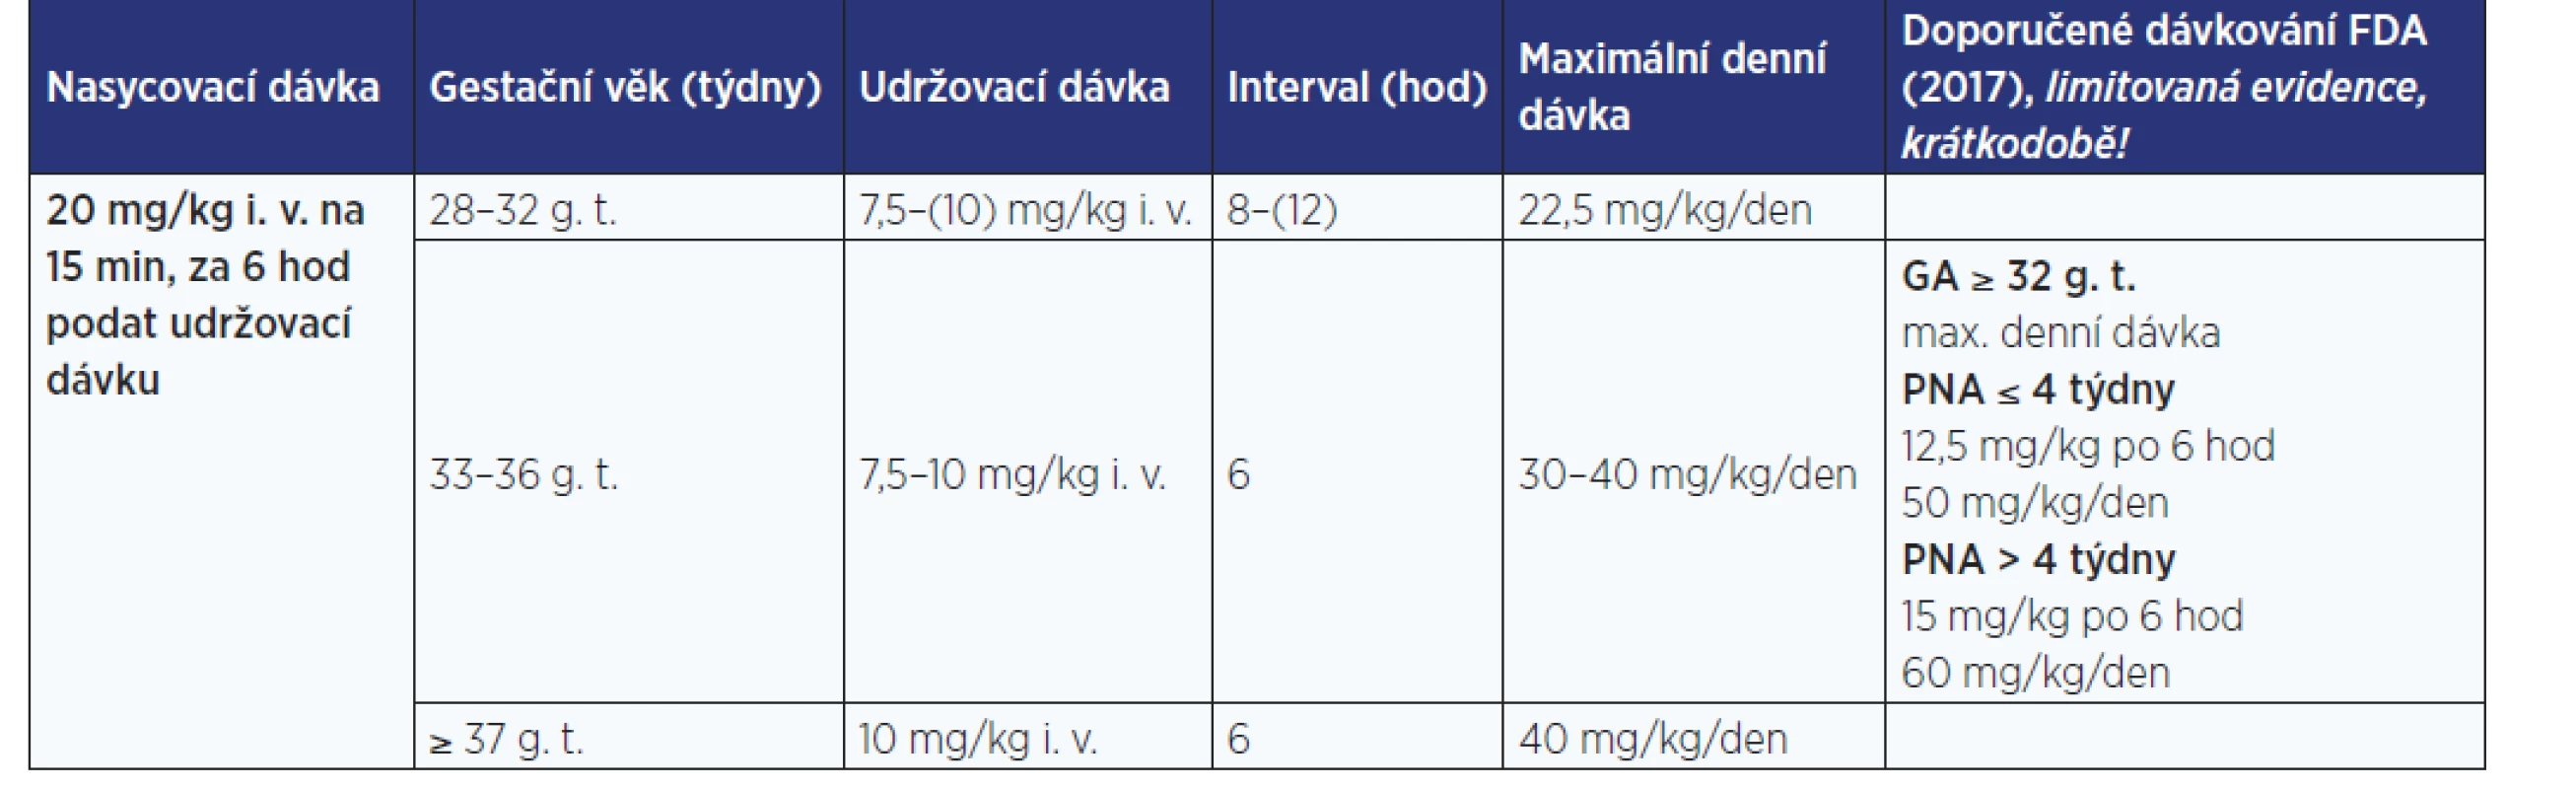 Variabilita dávkování pro paracetamol 10 mg/ml inf. sol. v indikaci akutní pooperační bolesti (obvykle 2–3 dny), antipyretikum,
15–30 min infuze (dle zdrojů: 5–8)